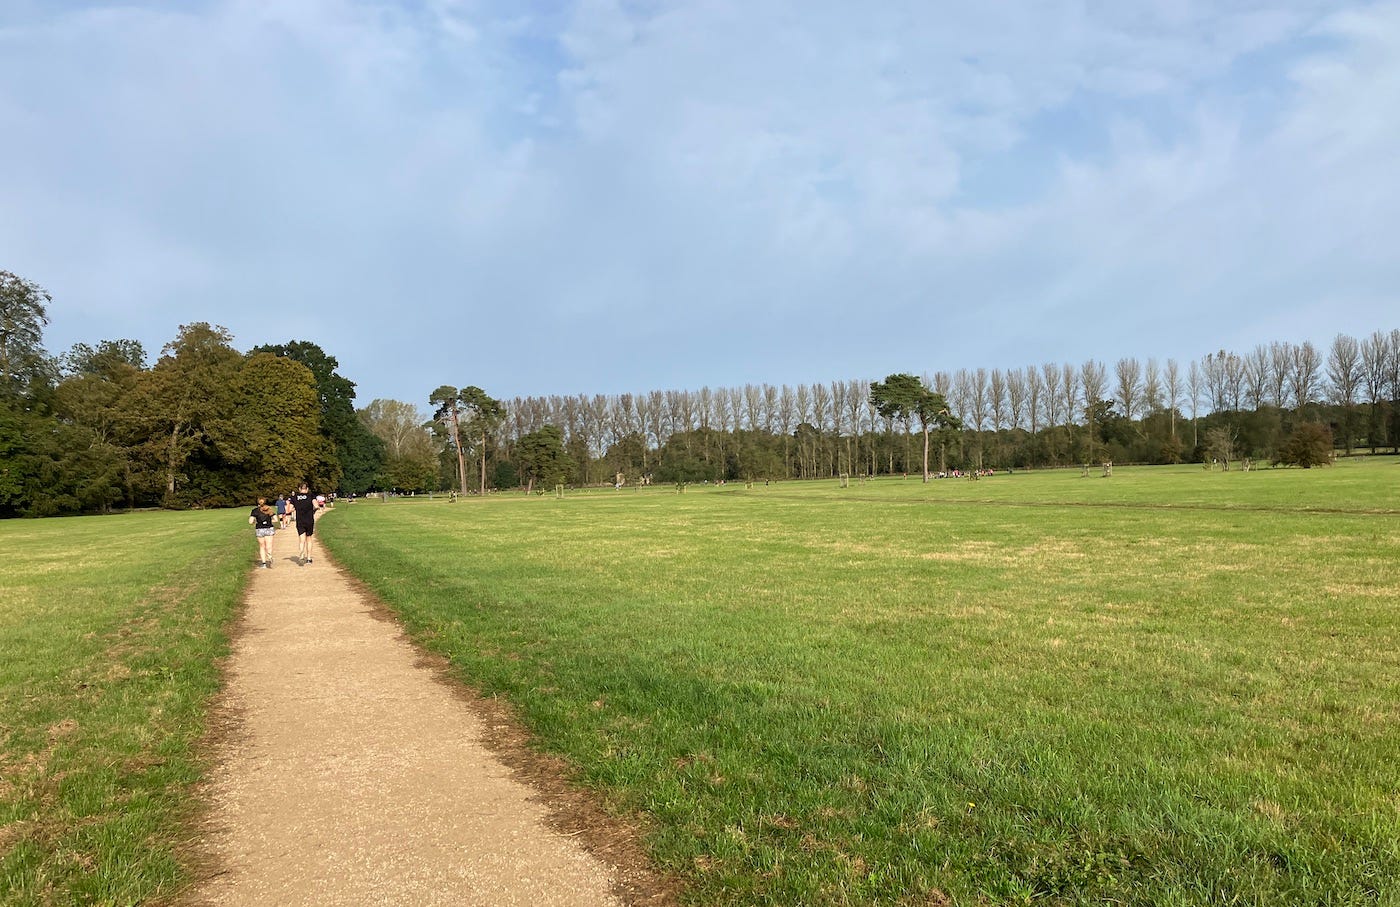 Beige path through green fields